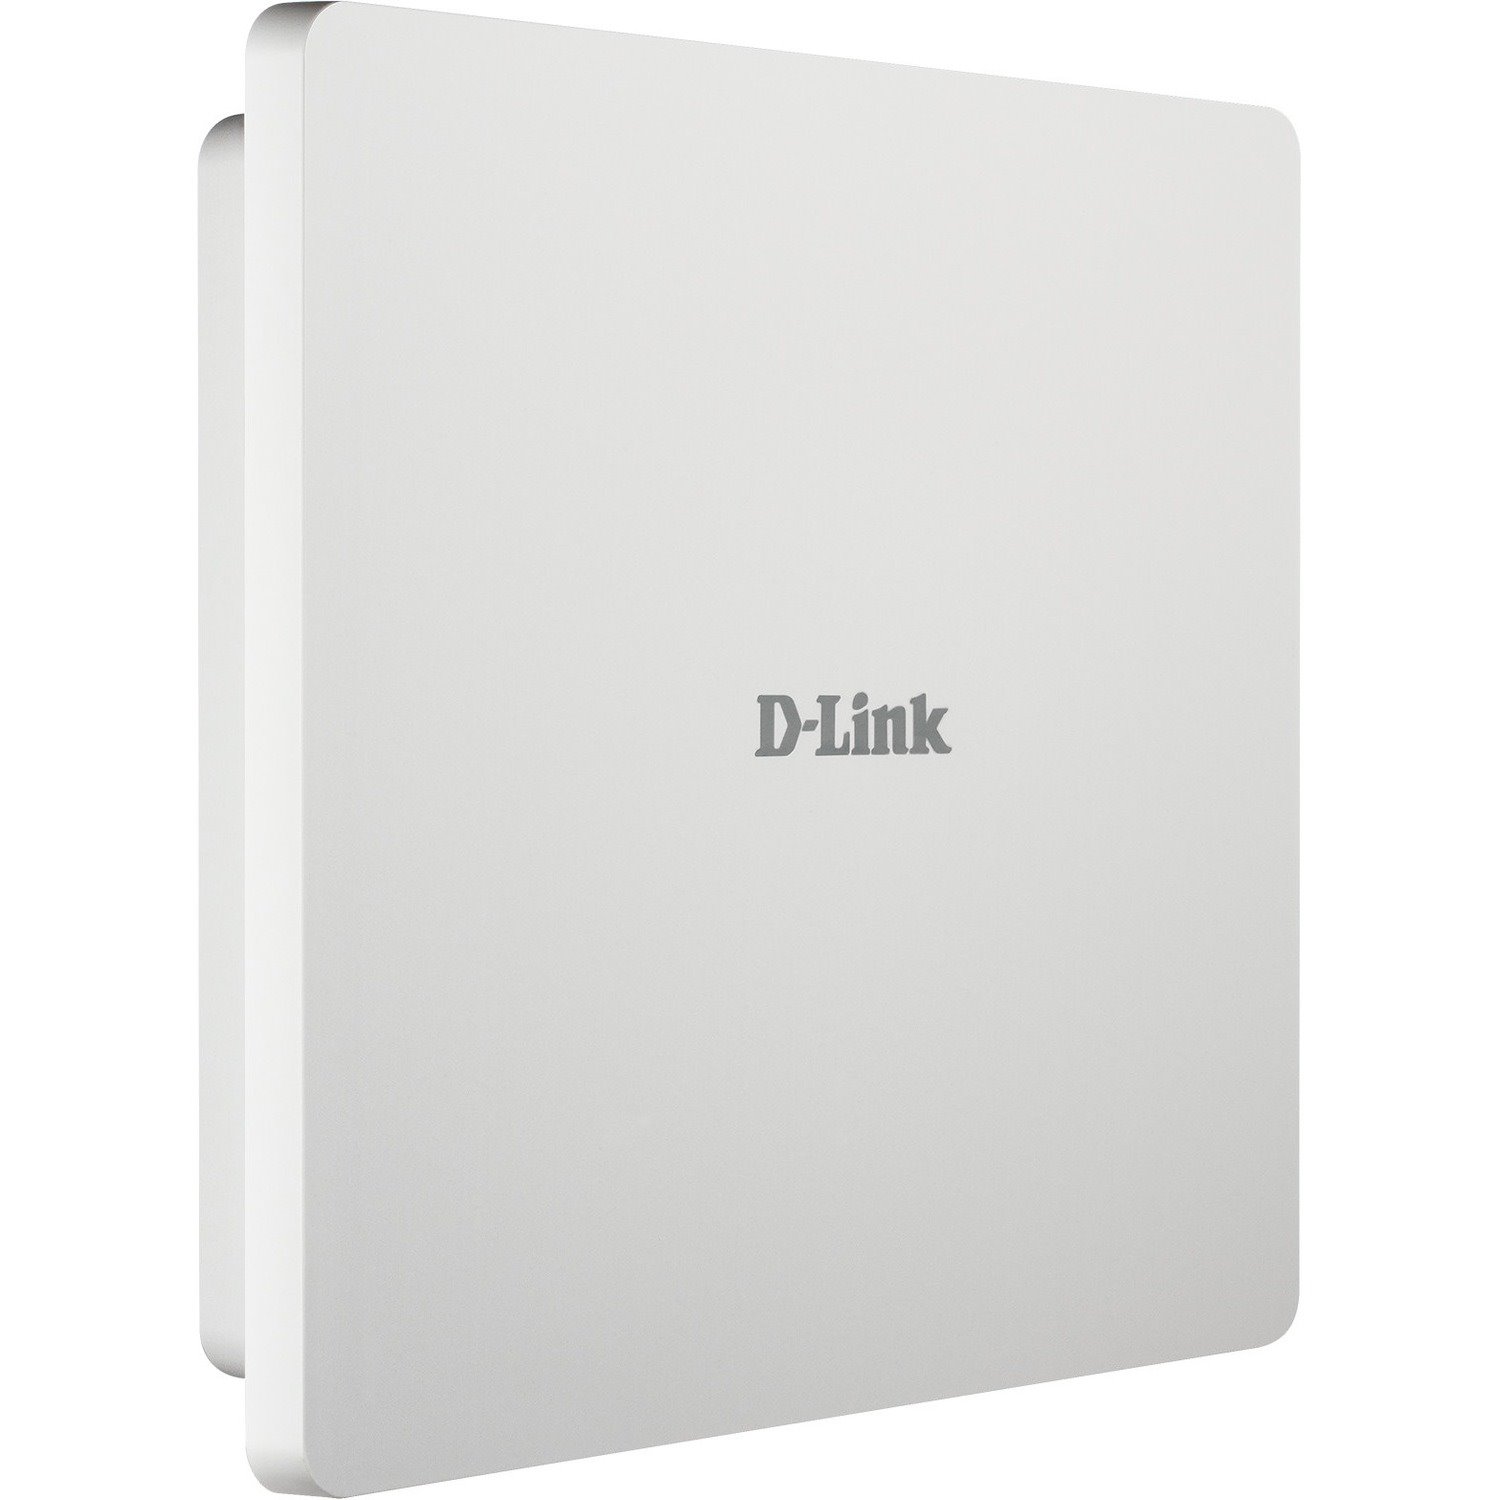 D-Link DAP-3662 IEEE 802.11ac 1.17 Gbit/s Wireless Access Point